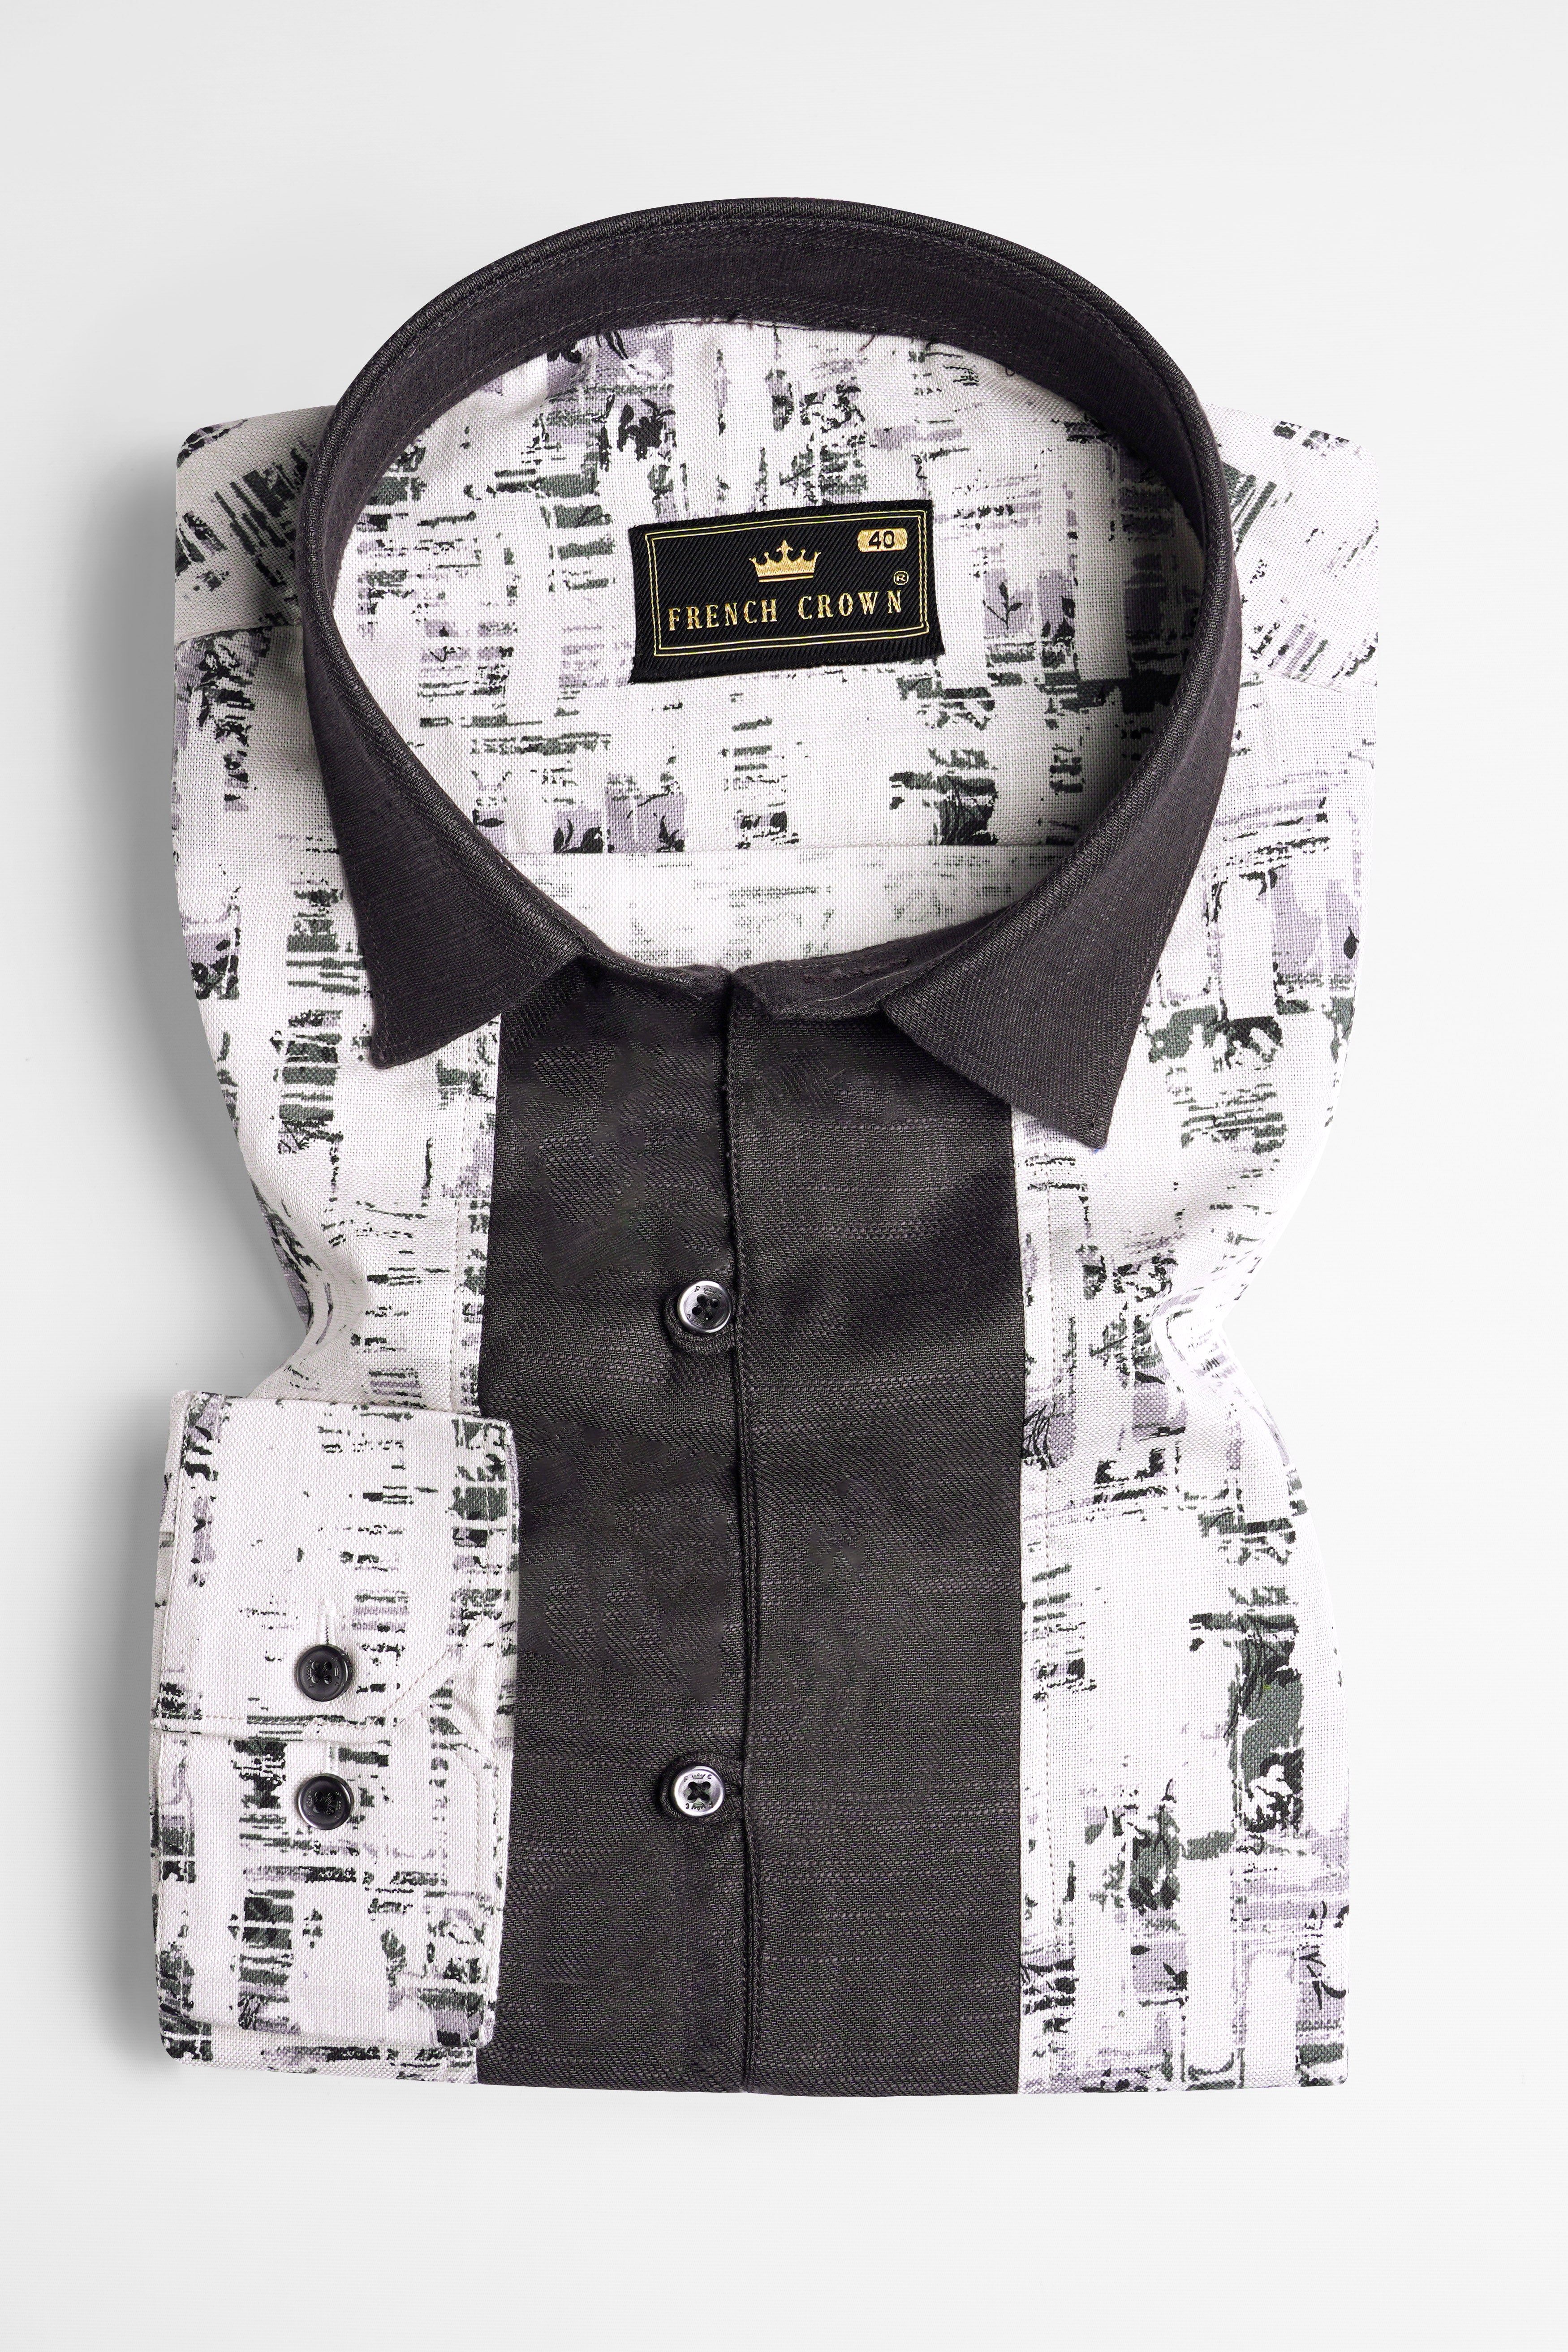 Bright White and Greyish Printed Royal Oxford Designer Shirt